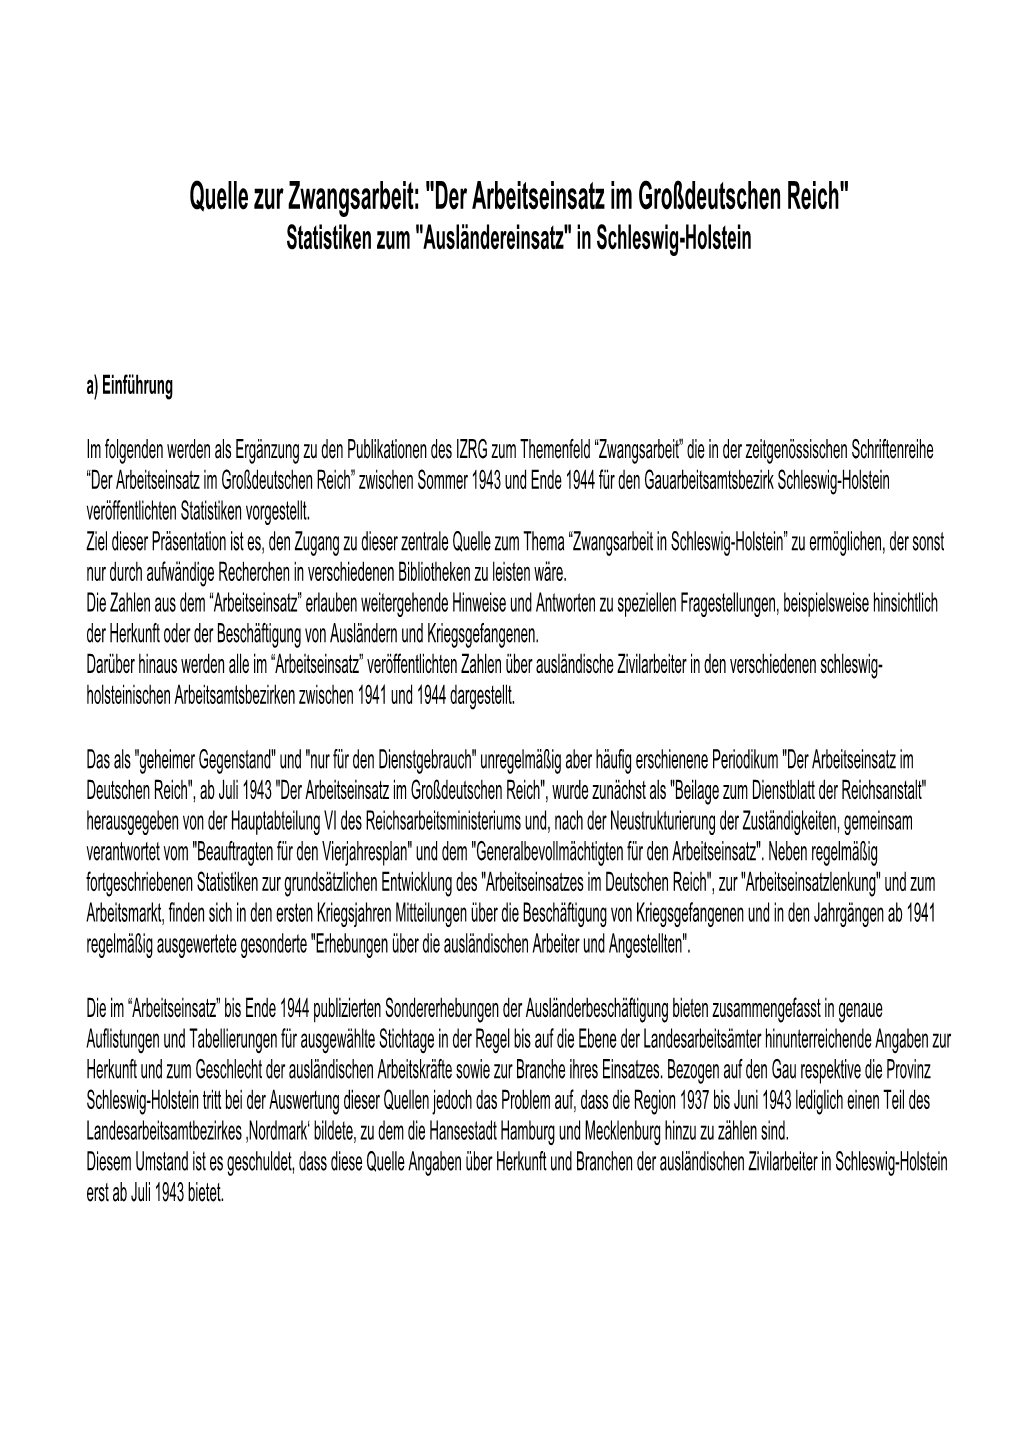 Quelle Zur Zwangsarbeit: "Der Arbeitseinsatz Im Großdeutschen Reich" Statistiken Zum "Ausländereinsatz" in Schleswig-Holstein